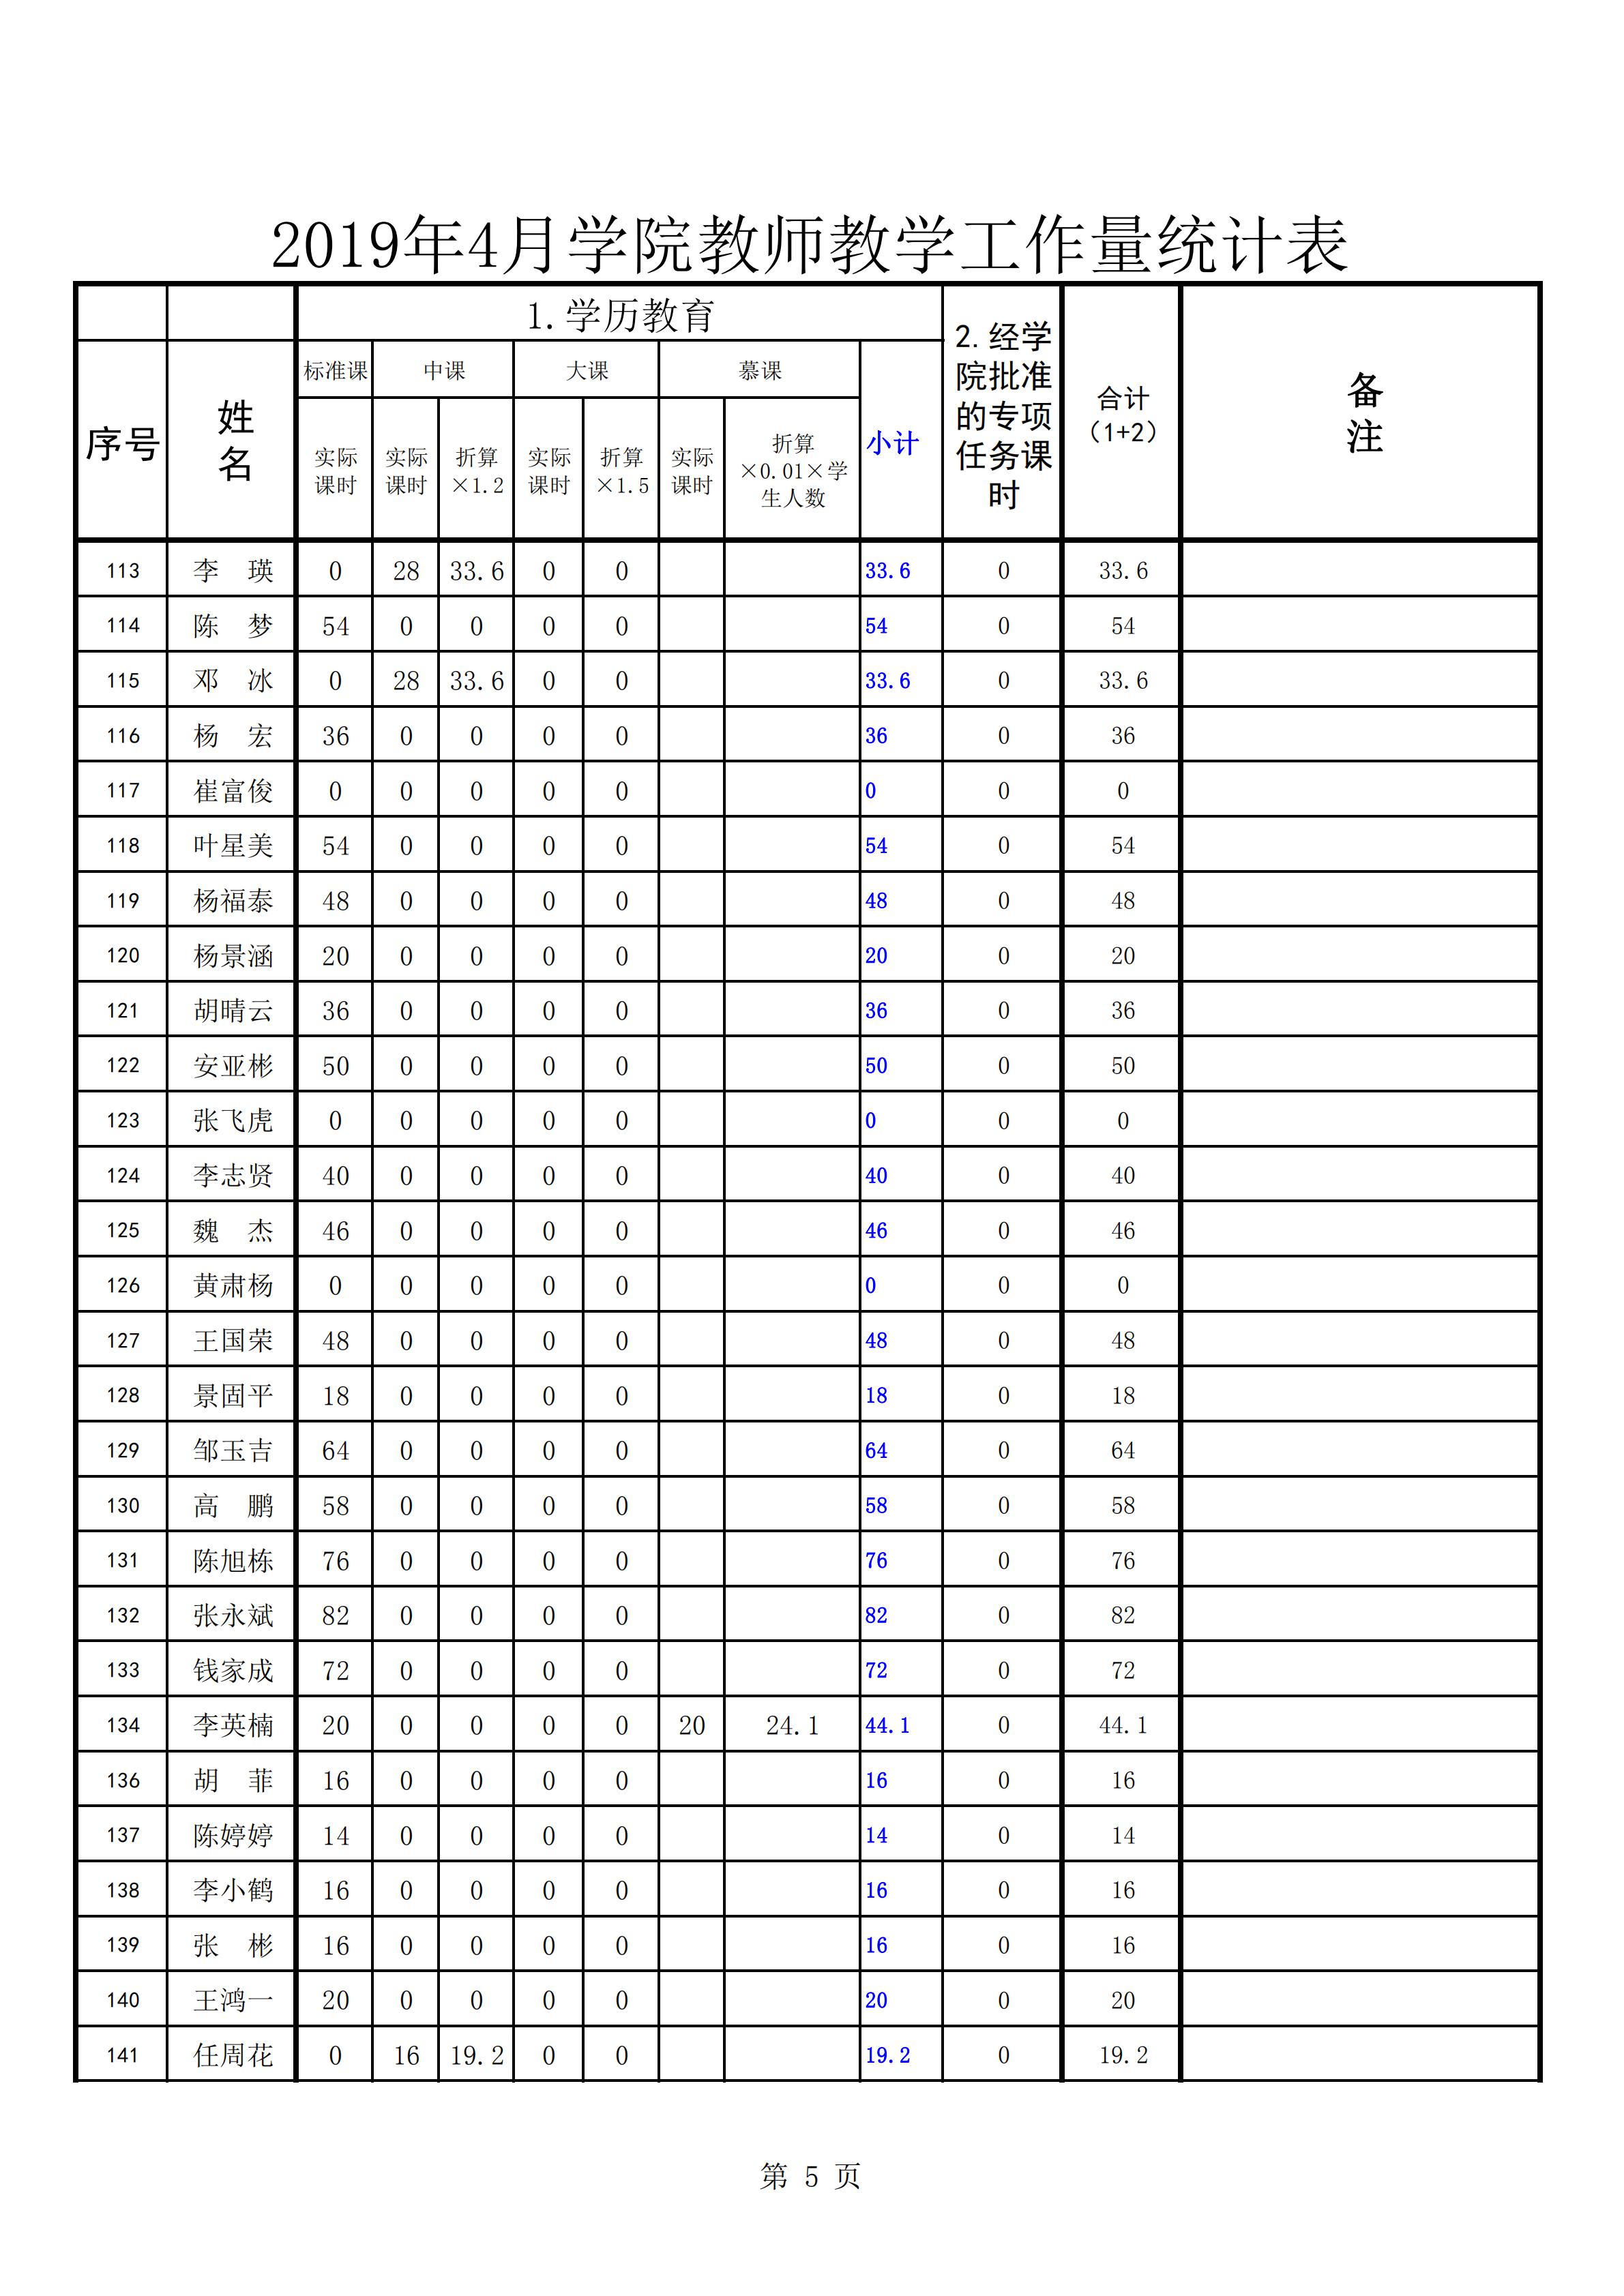 2019年4月份教师教学工作量统计表(公示0505)_04.jpg